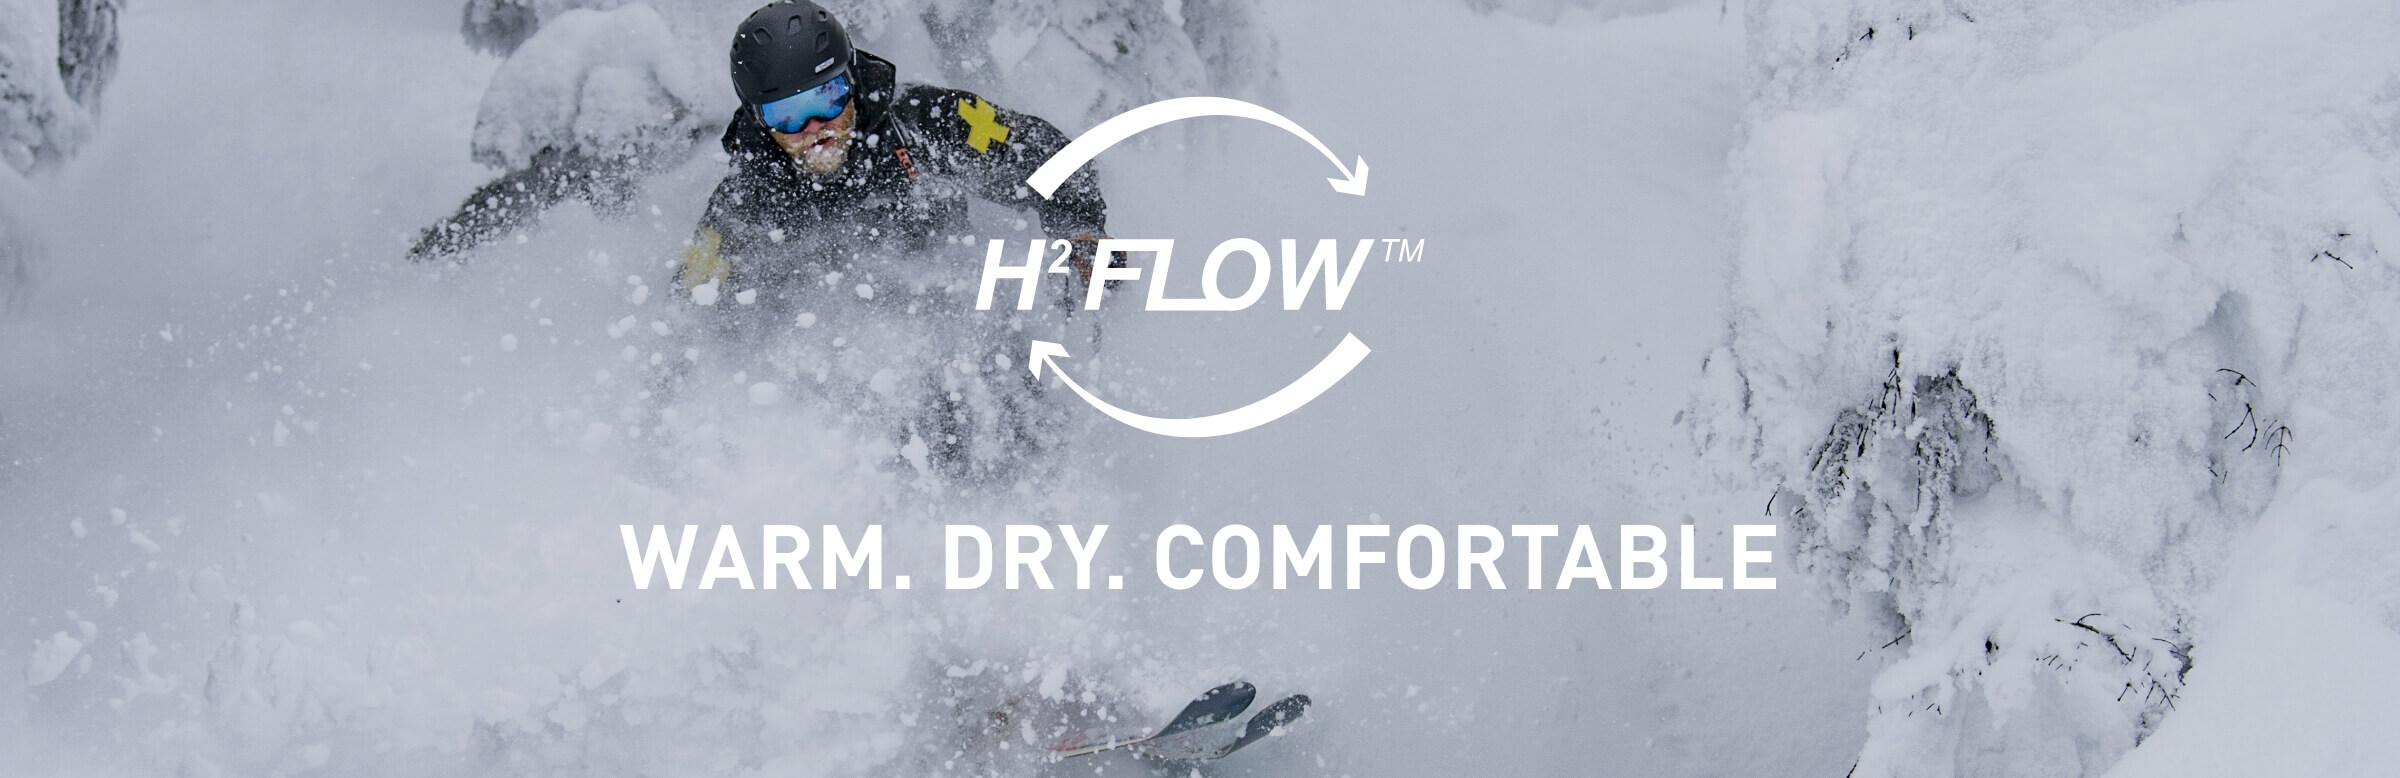 H2FLOW™ de la Helly Hansen: Mai Cald, Mai Răcoros, Mai Uscat